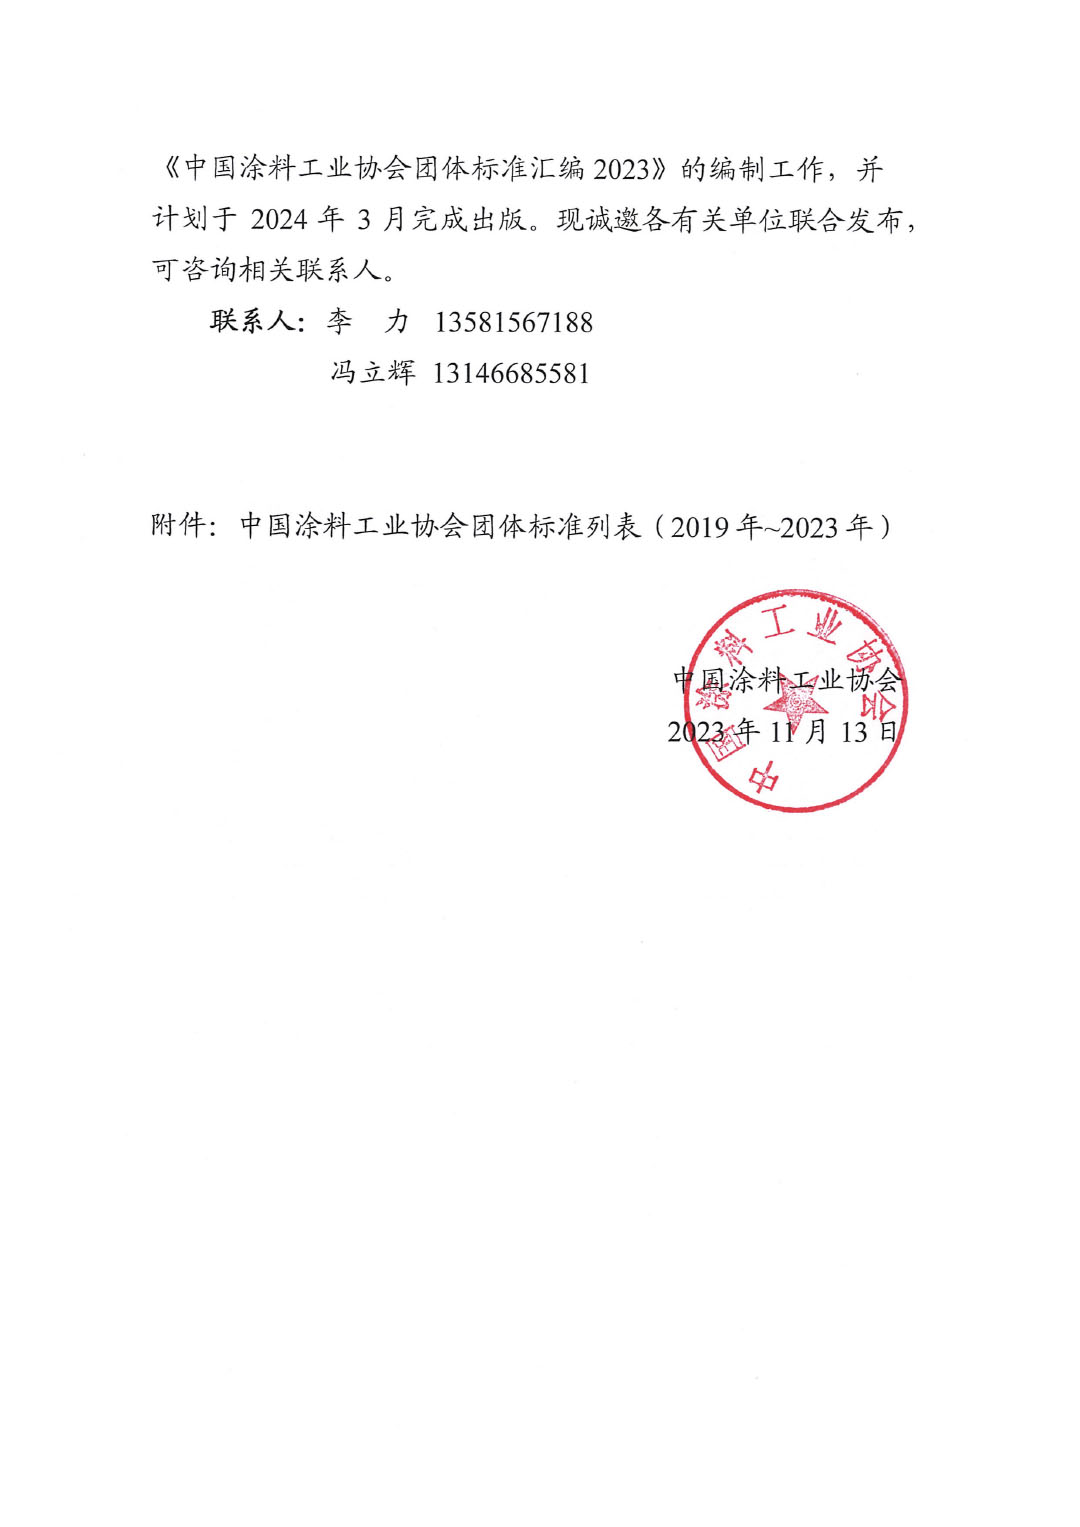 关于开展《中国涂料工业协会团体标准汇编2023》编制工作的通知-2